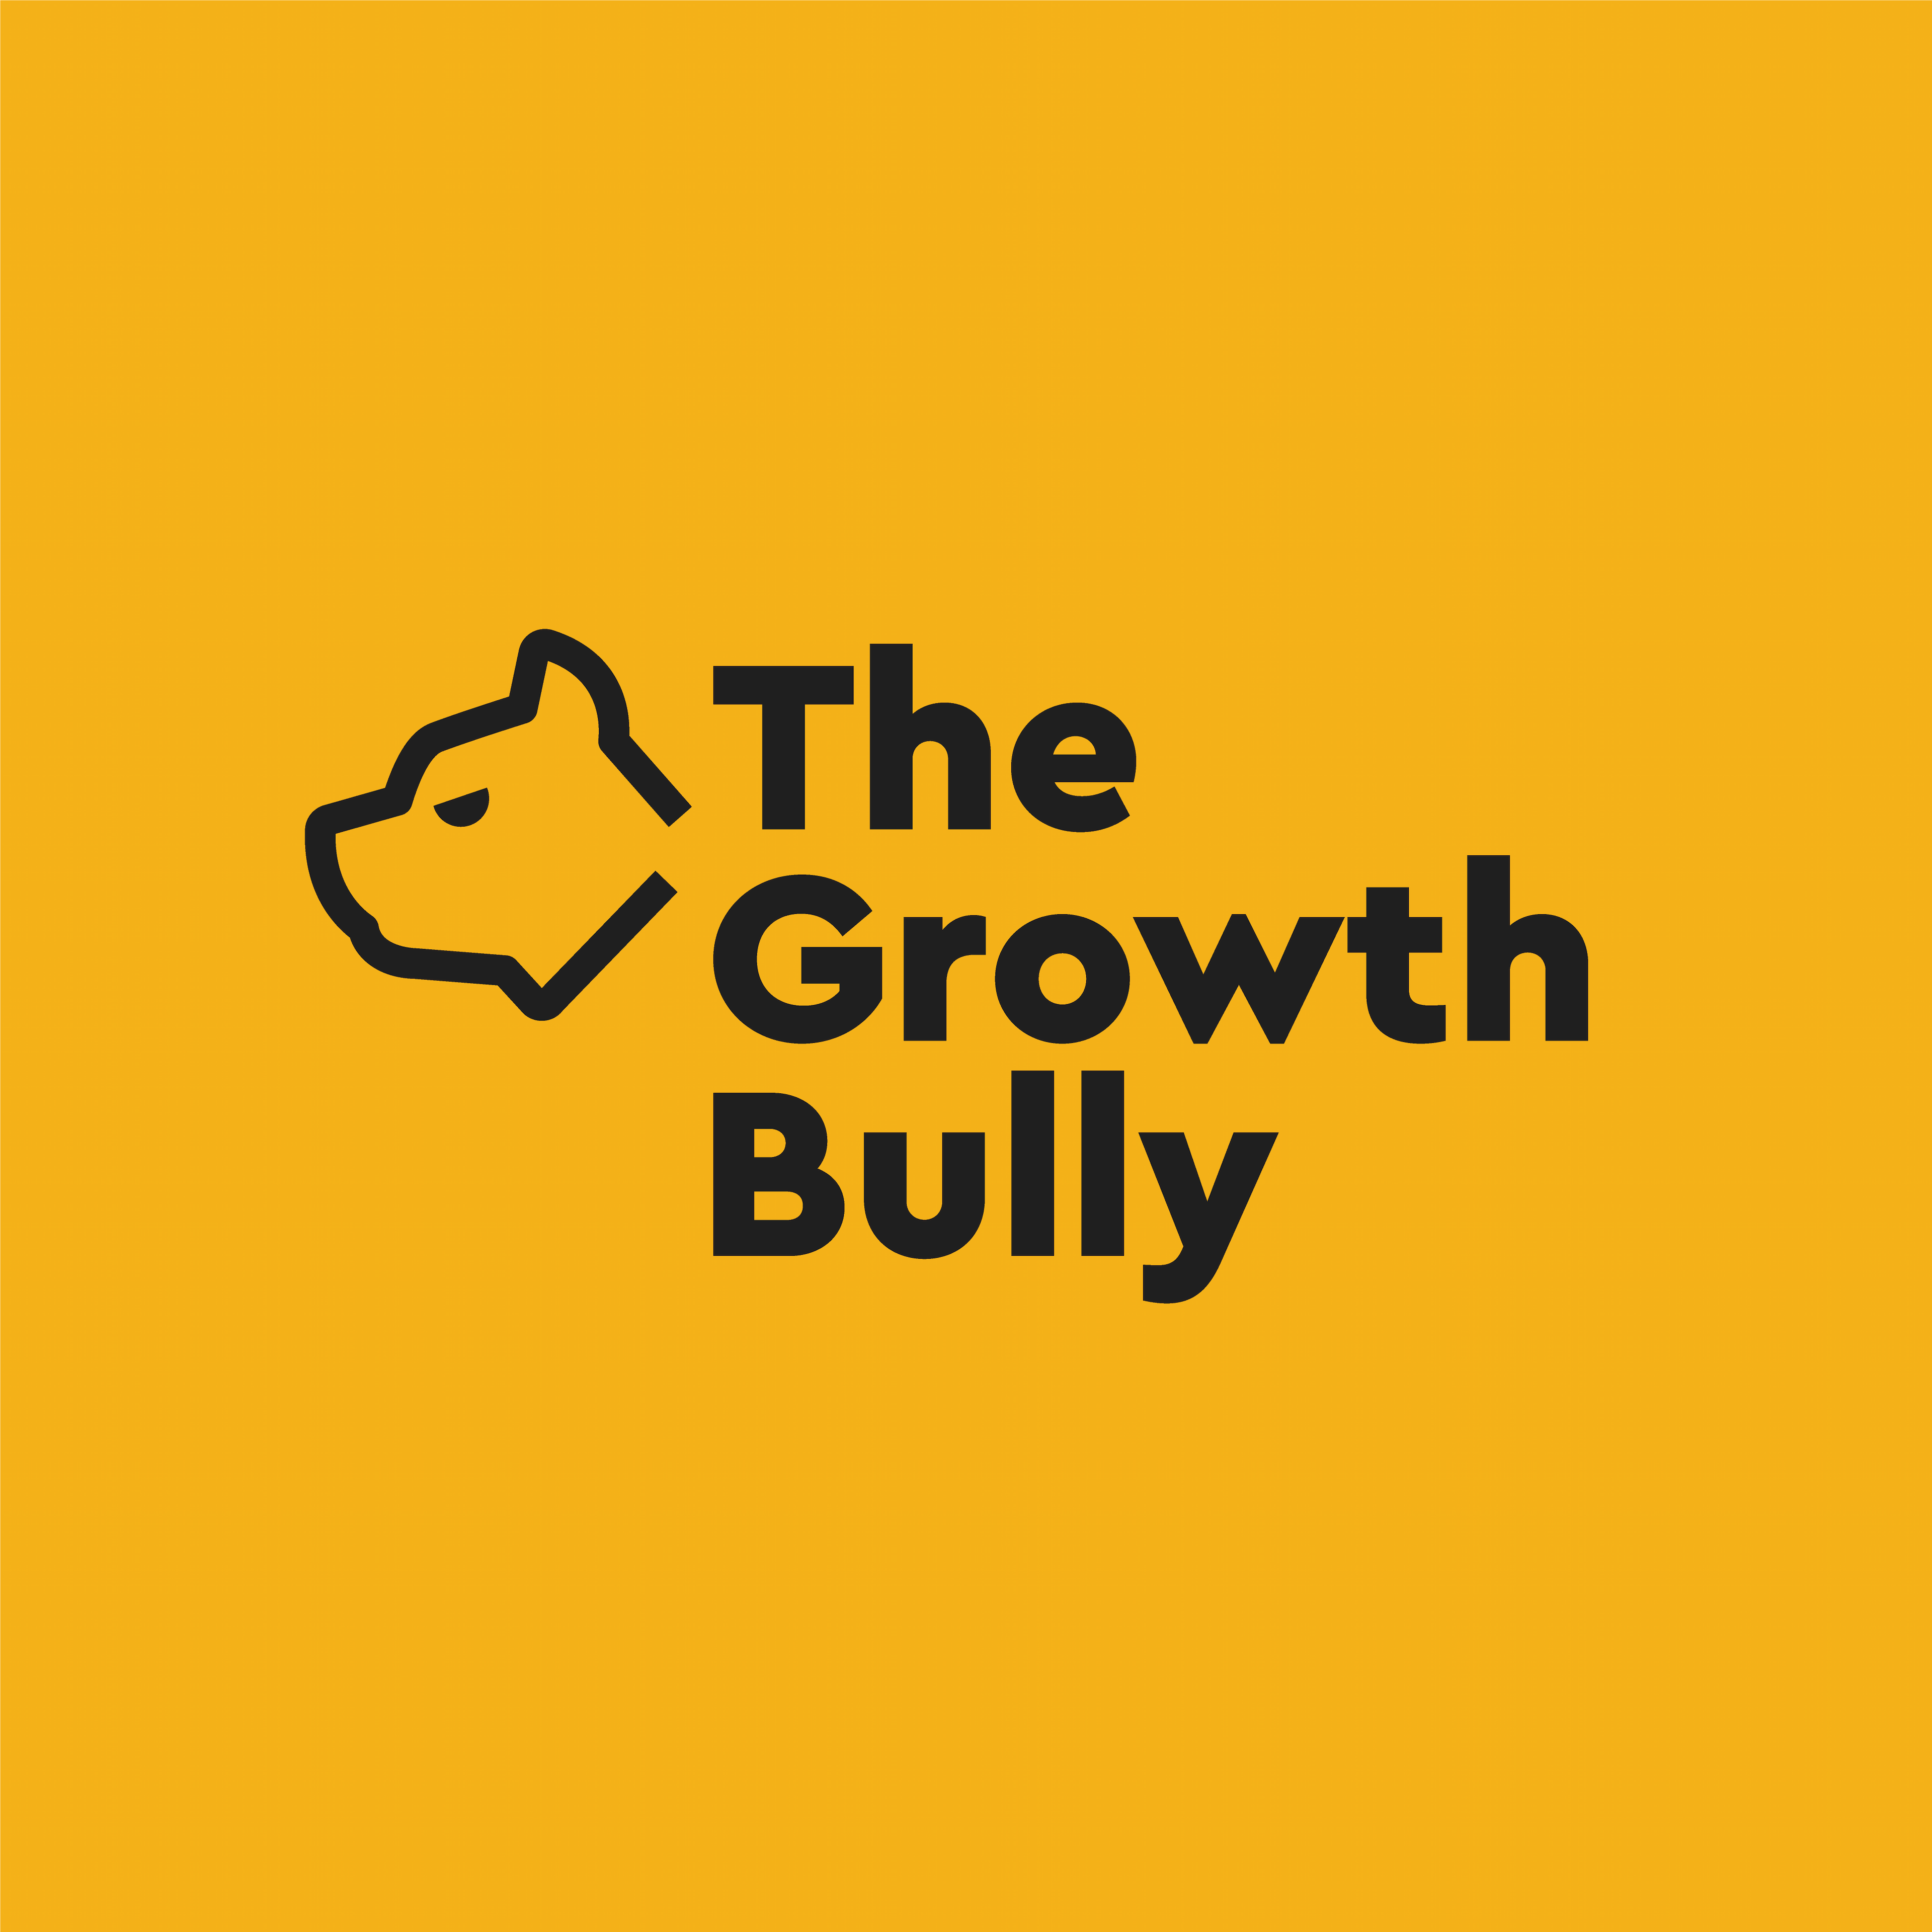 The Growth Bully Ltd. logo